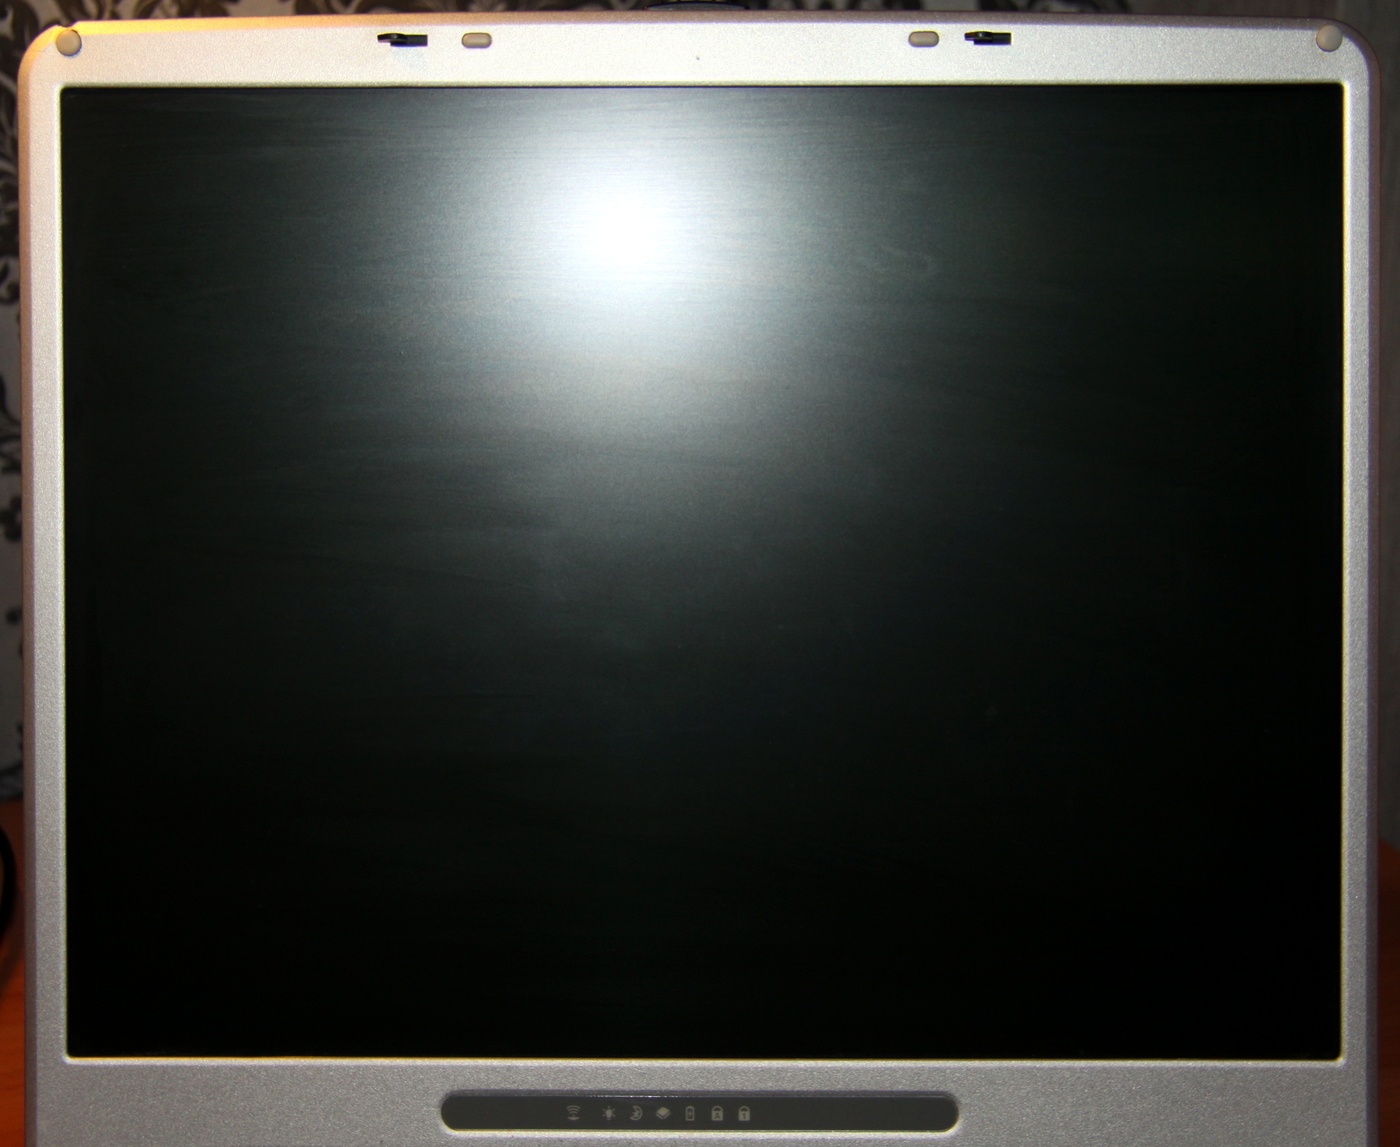 Обзор отечественного ноутбука iRU Brava-4215COMBO, выпущенного в 2004 году (Часть 1) - 10